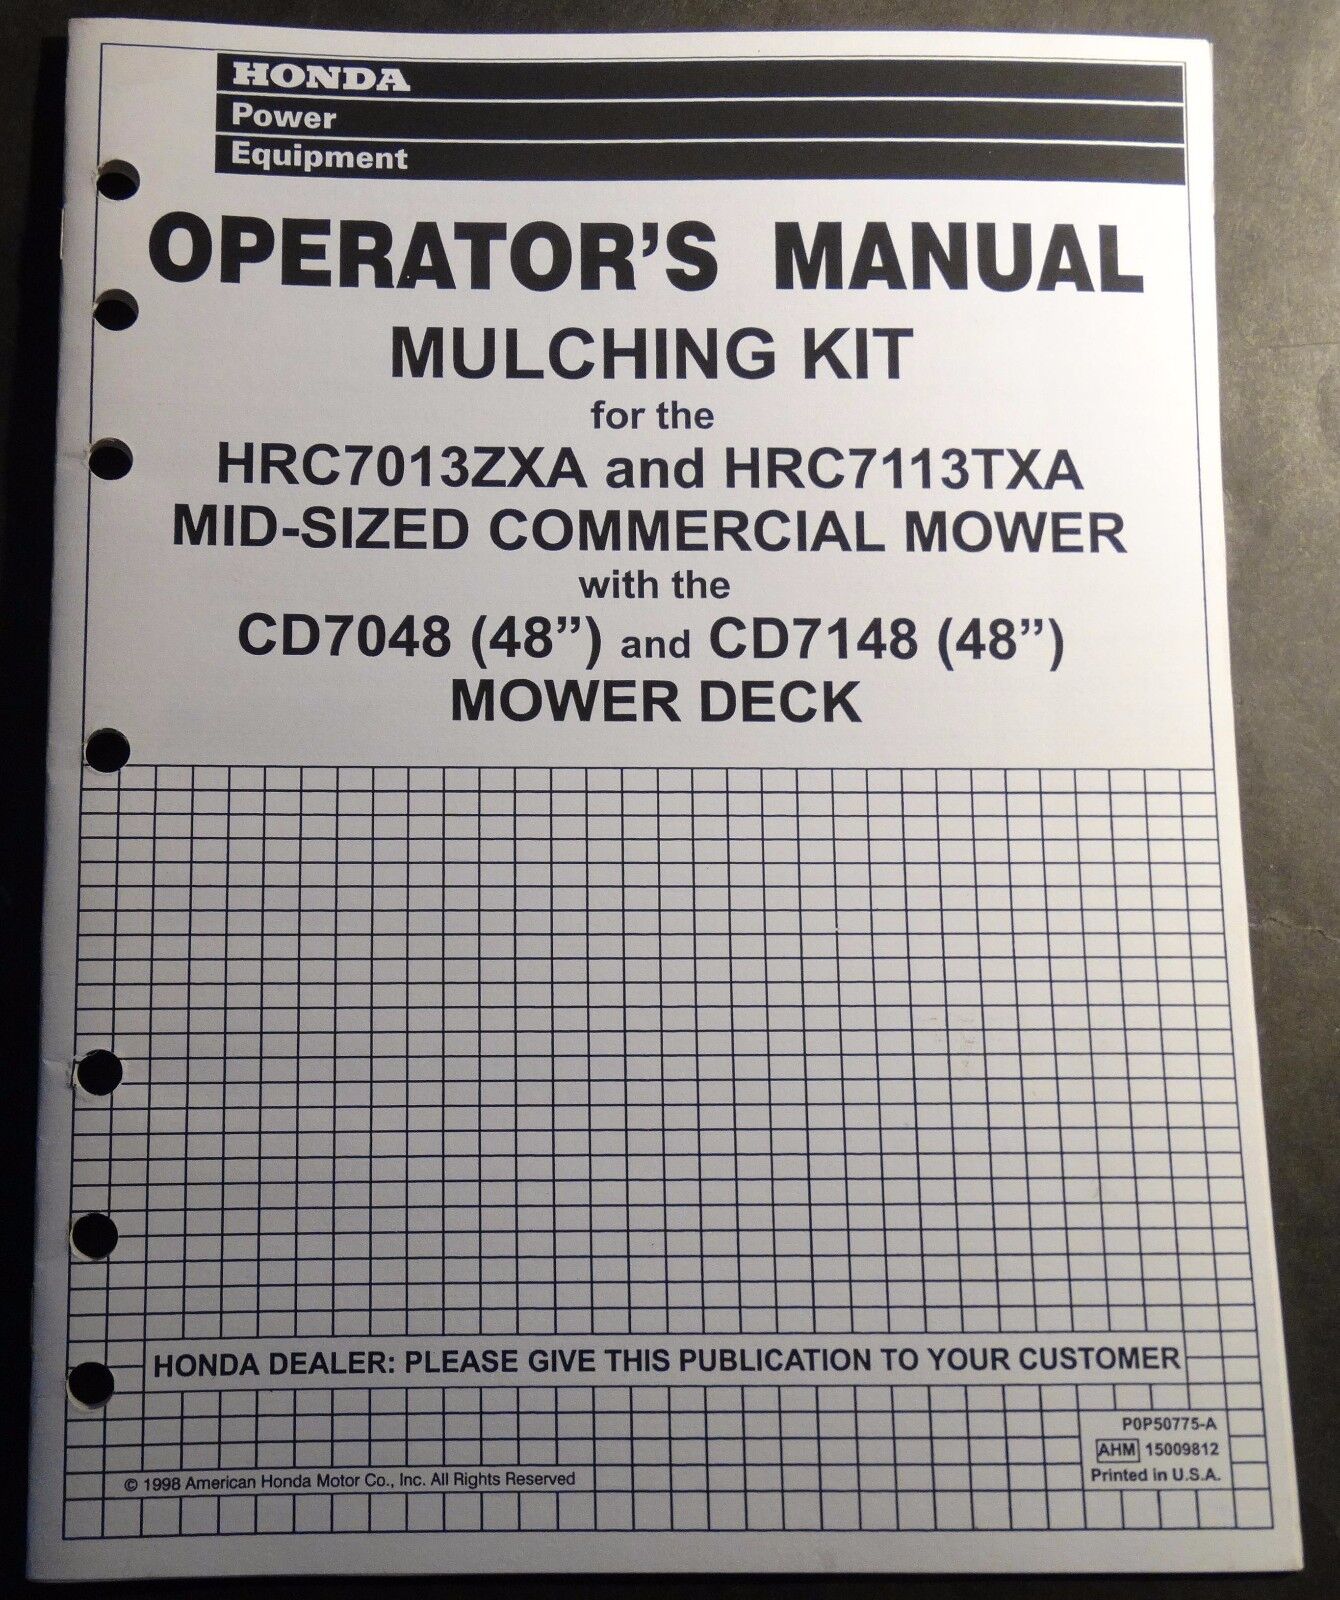 1999 HONDA MULCHING KIT HRC7013ZXA & HRC7113TXA MOWERS OPERATORS MANUAL (643)